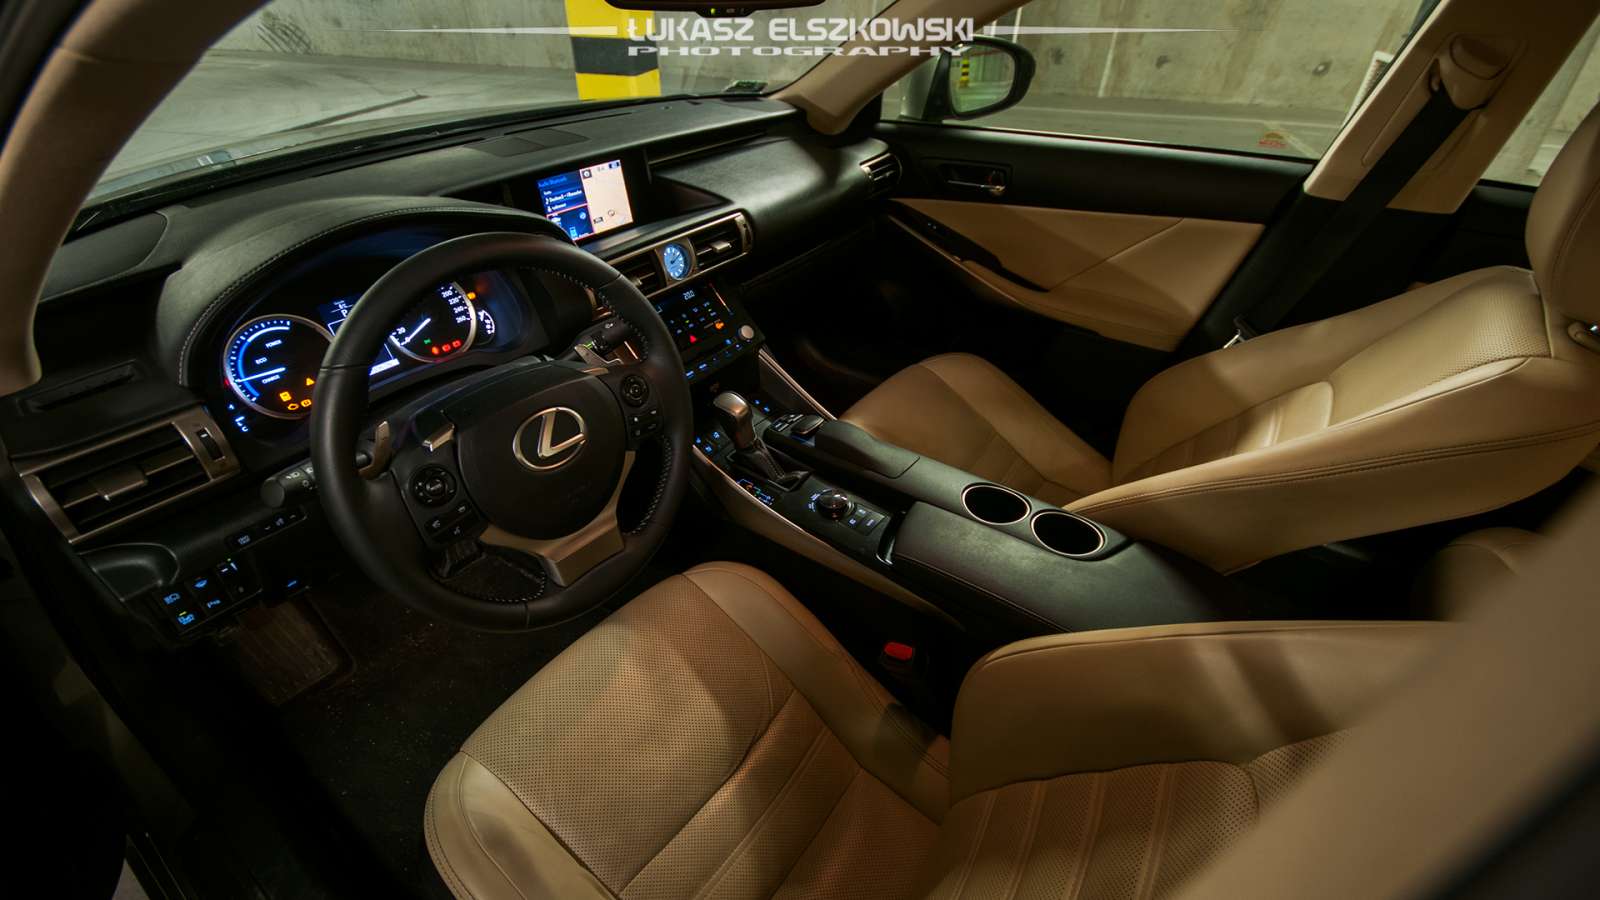 Lexus IS300h interior